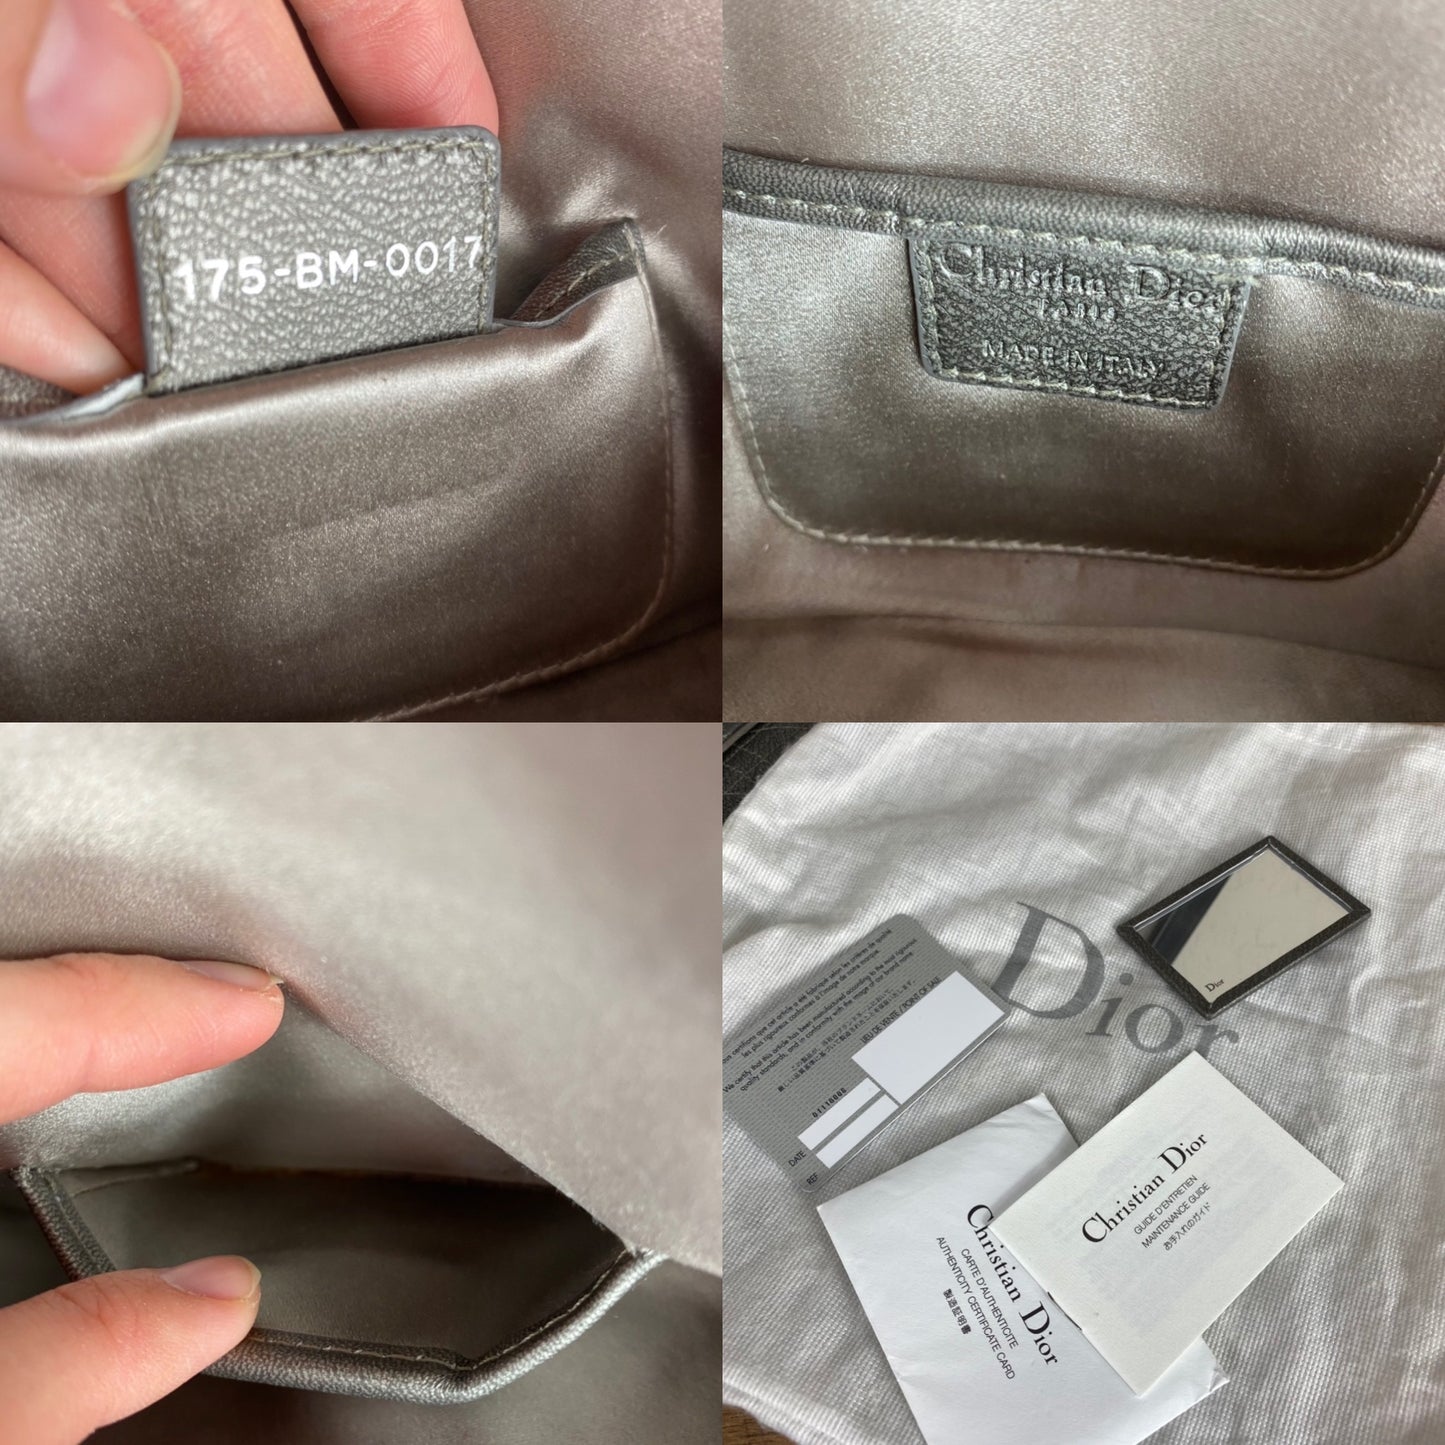 Christian Dior Lady Dior Cannage Chain Clutch Bag